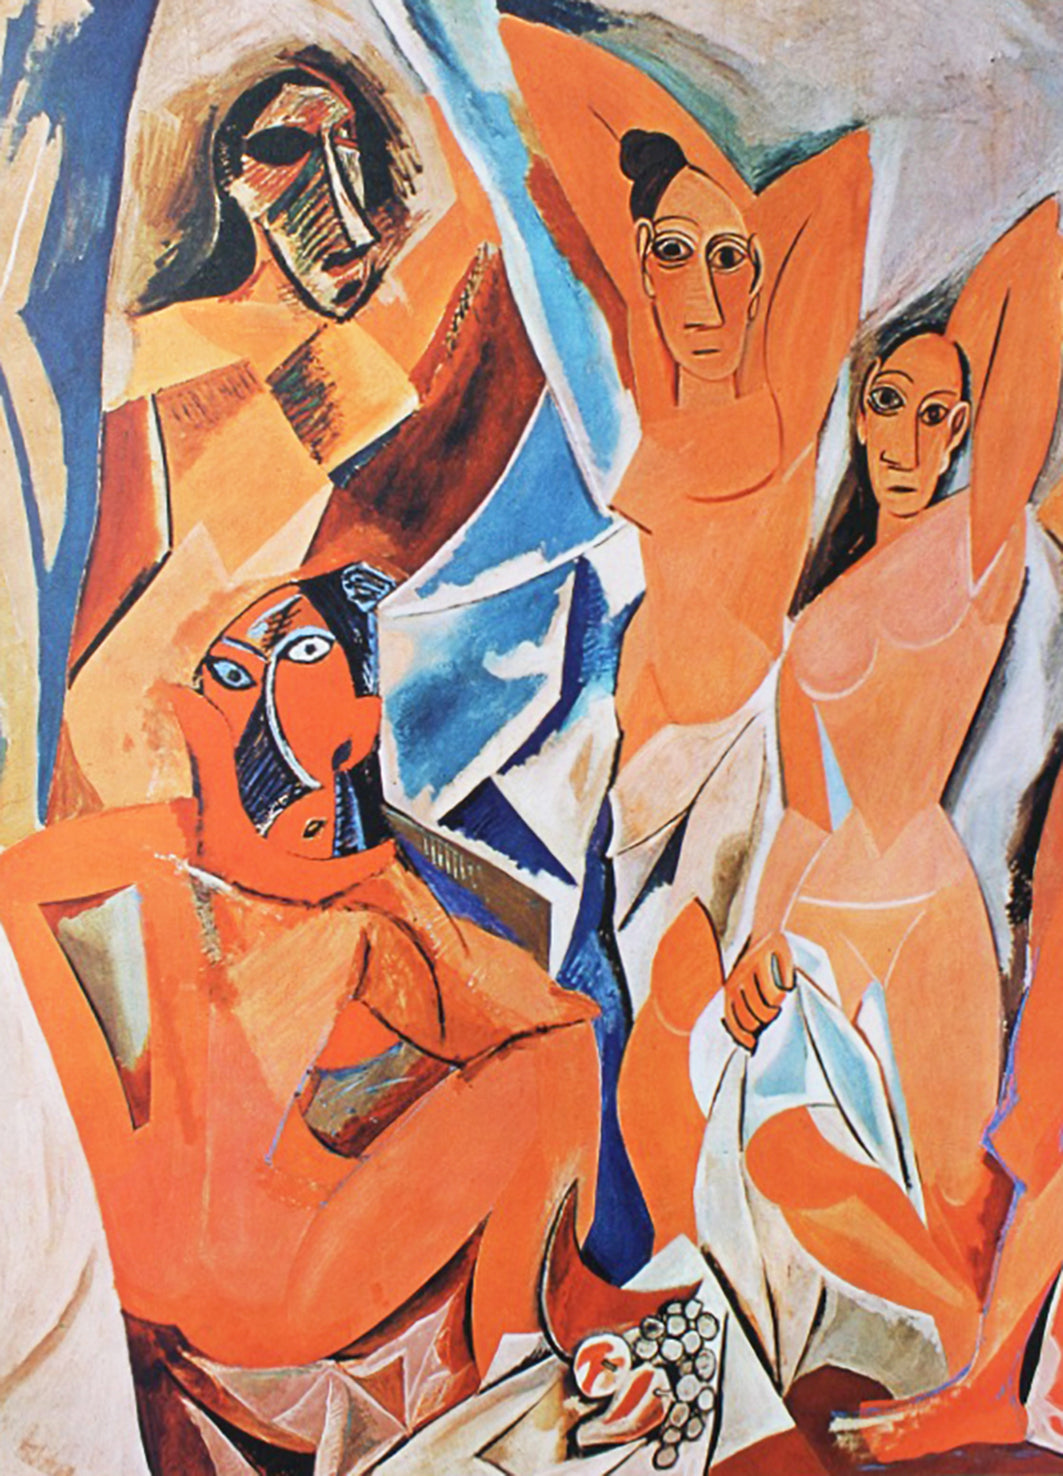 Pablo Picasso - Les demoiselles d'Avignon (1962-1967)